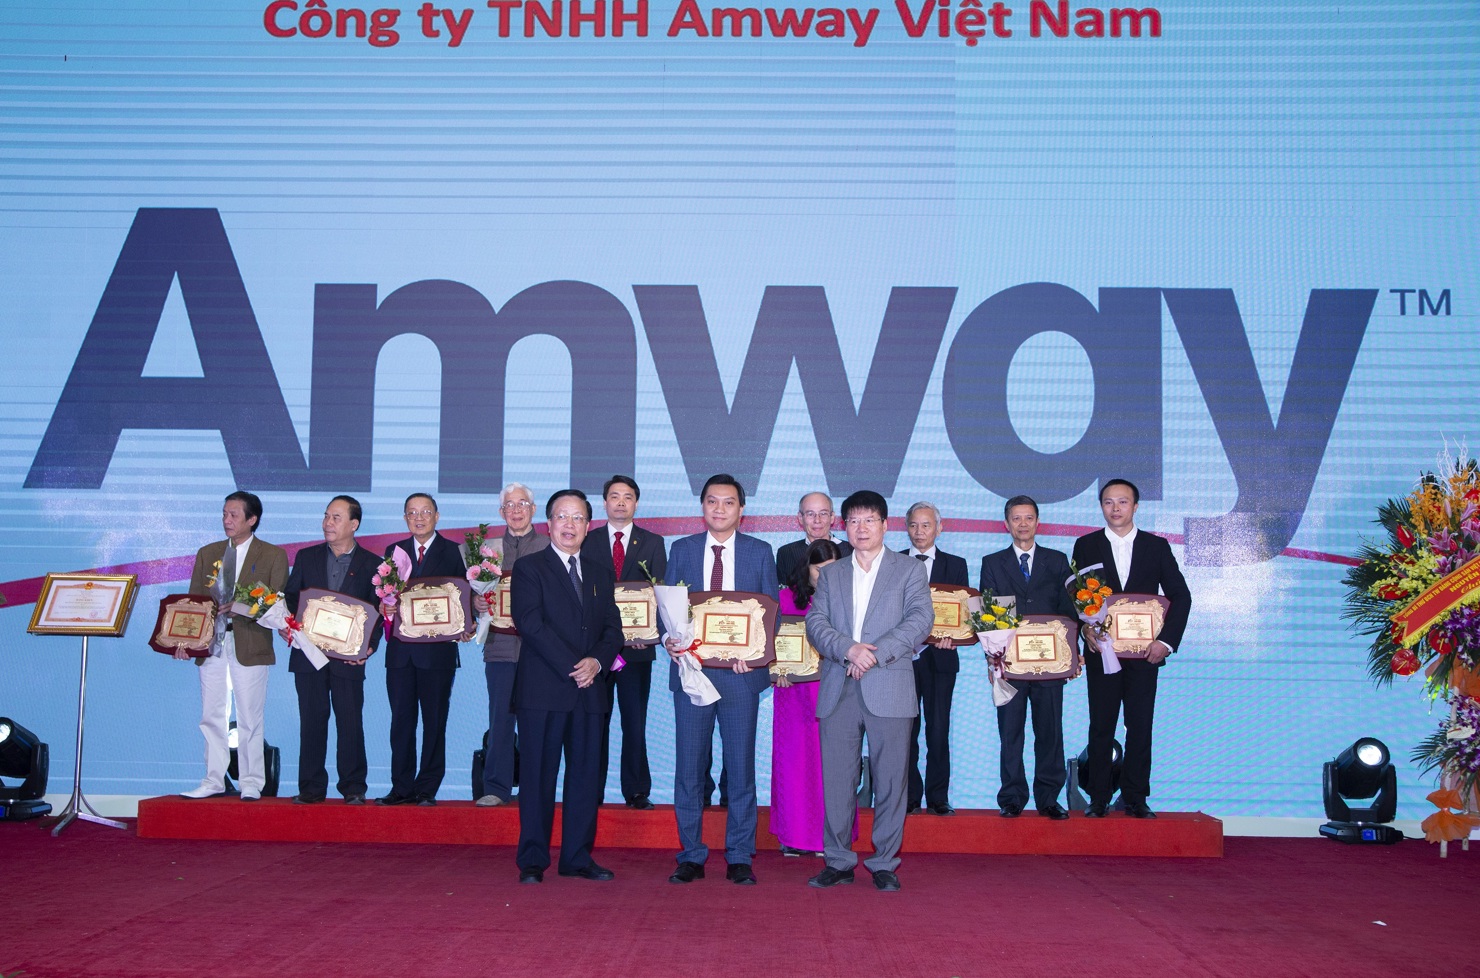 Đại diện Amway Việt Nam vinh dự nhận Bằng khen vì nỗ lực trong chiến lược kinh doanh bền vững, gắn kết bền chặt với cộng đồng